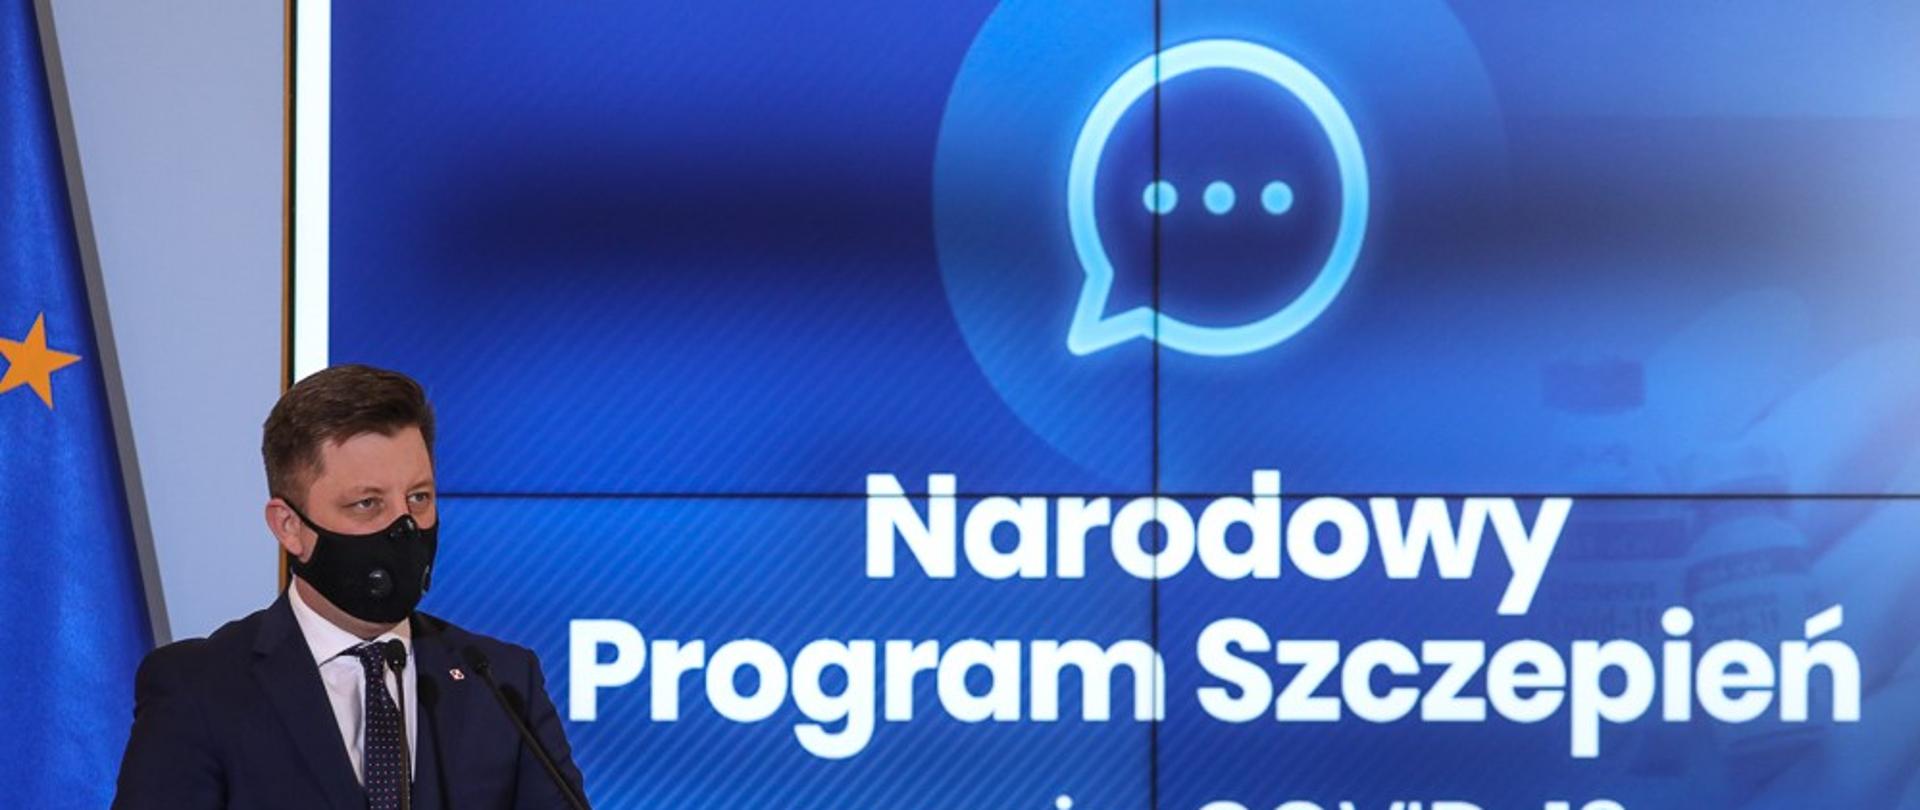 Minister Michał Dworczyk na niebieskim tle z napisem Narodowy Program Szczepień przeciw COVID-19.